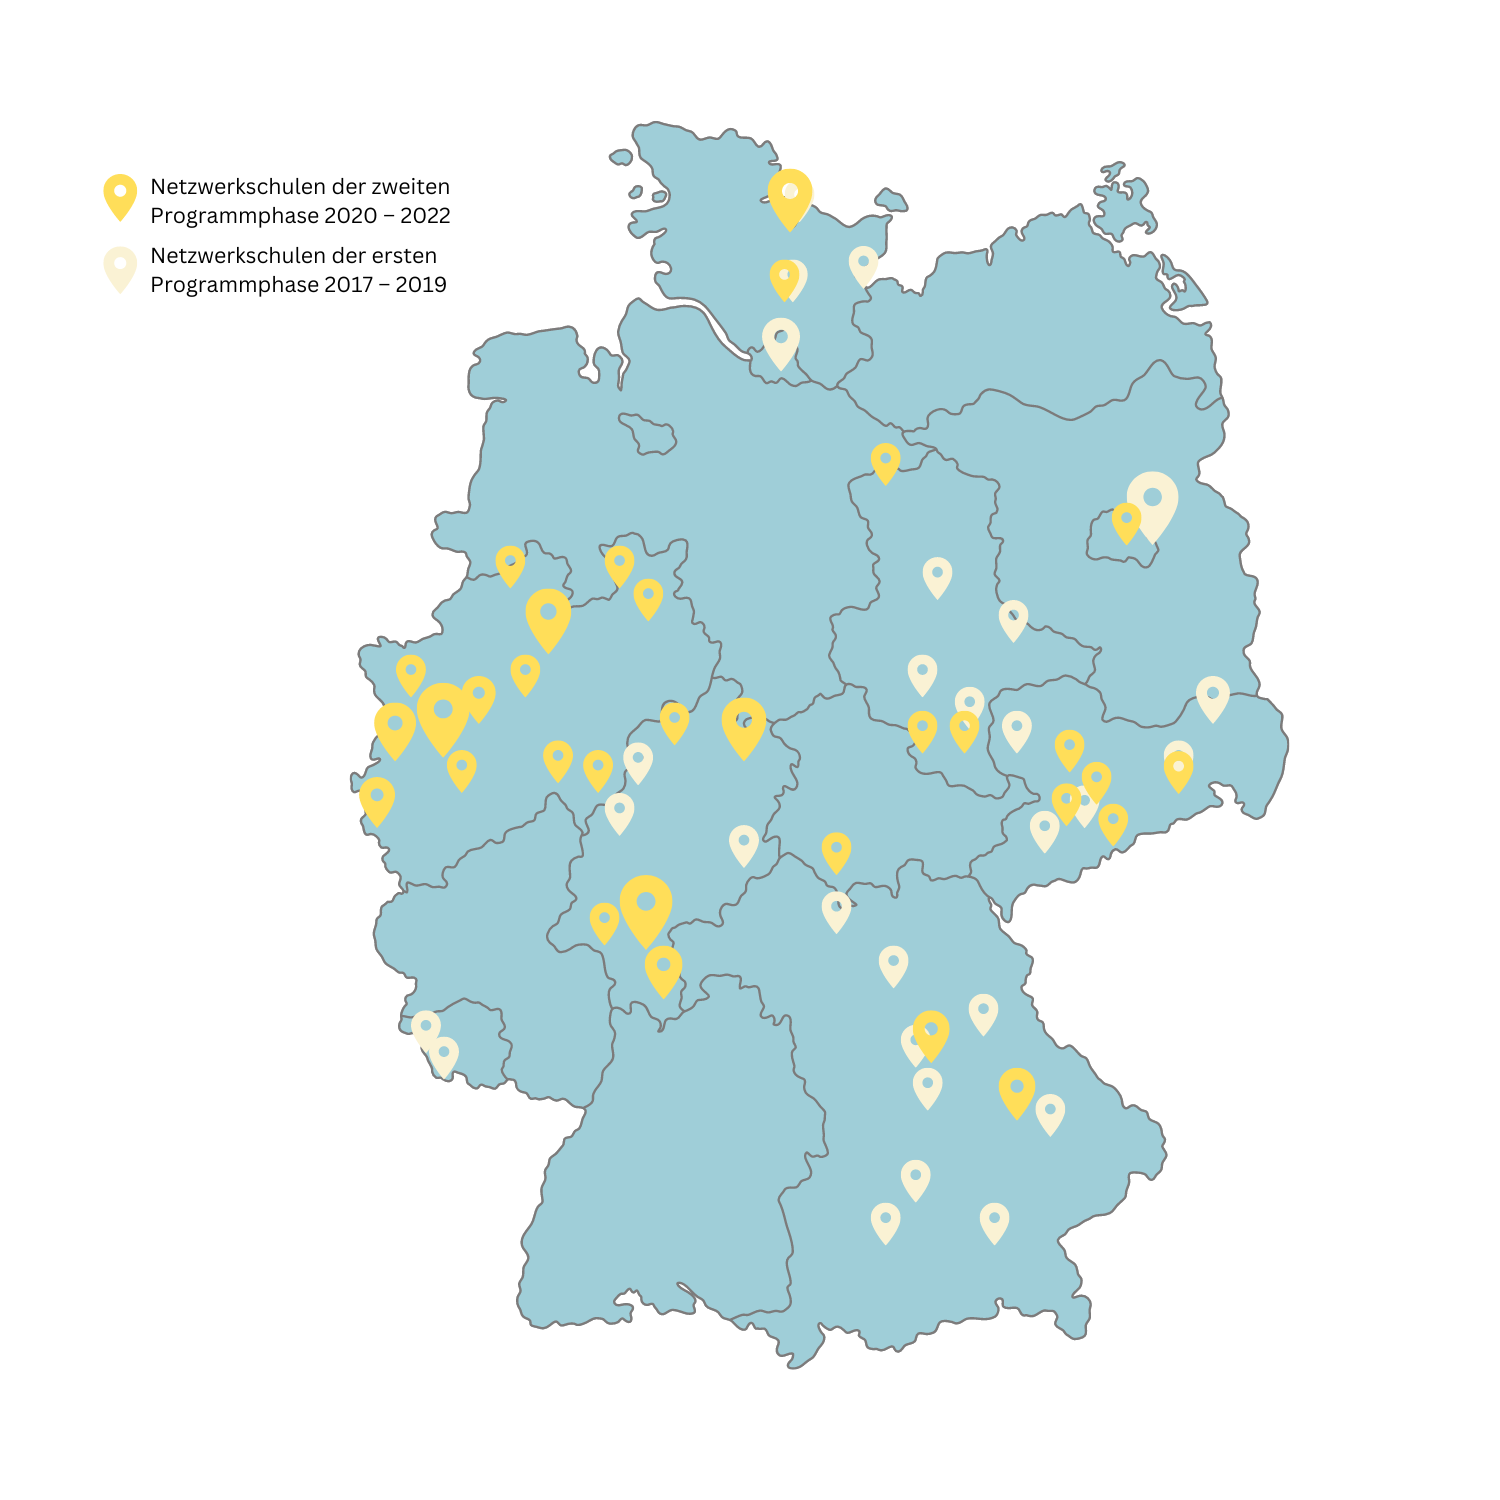 Deutschlandkarte mit farbigen Pins zur KIennzeichnung von Netzwerkschulen